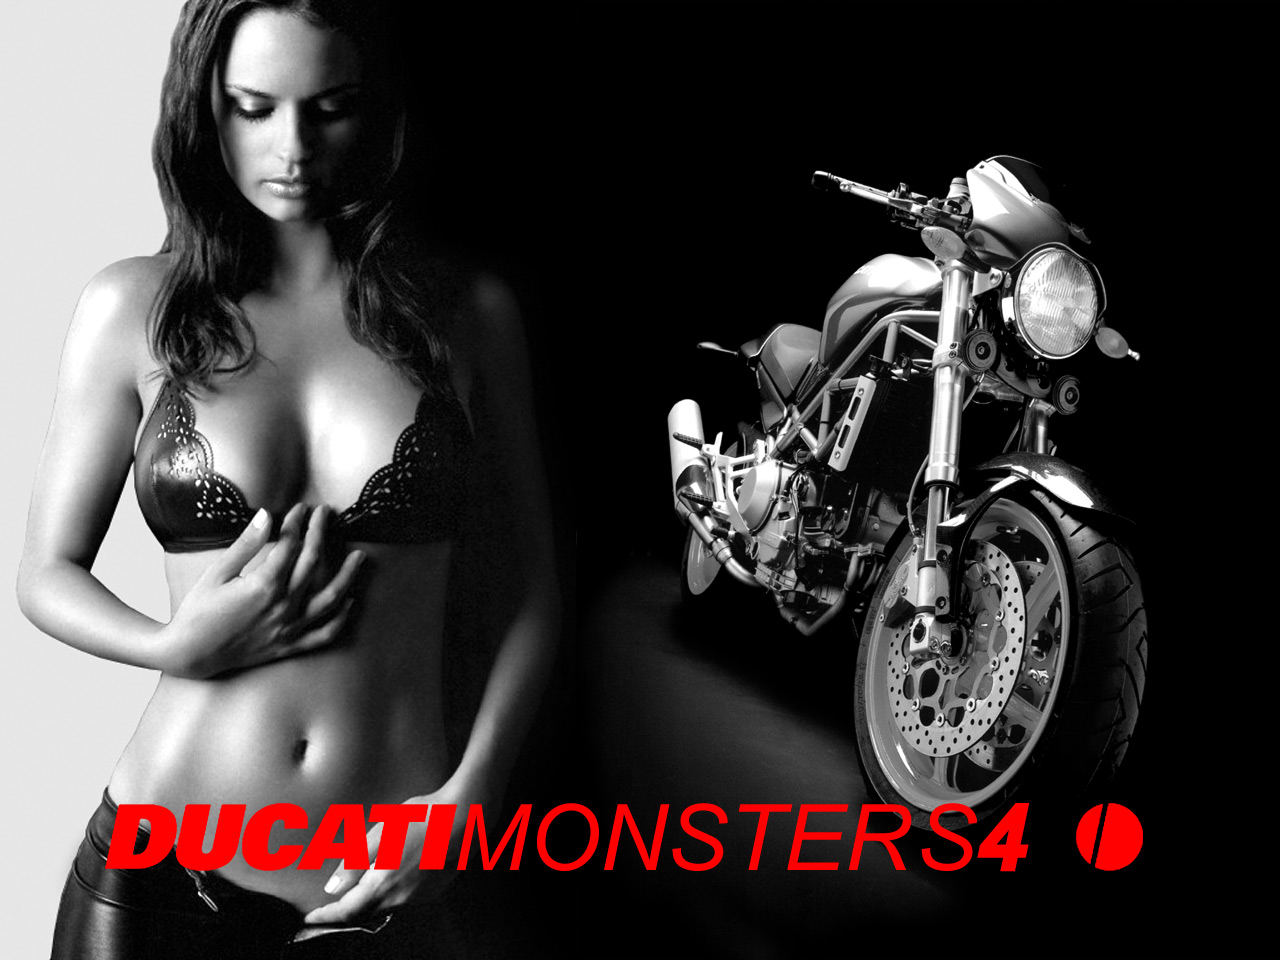 Ducati Monster S4 & girl